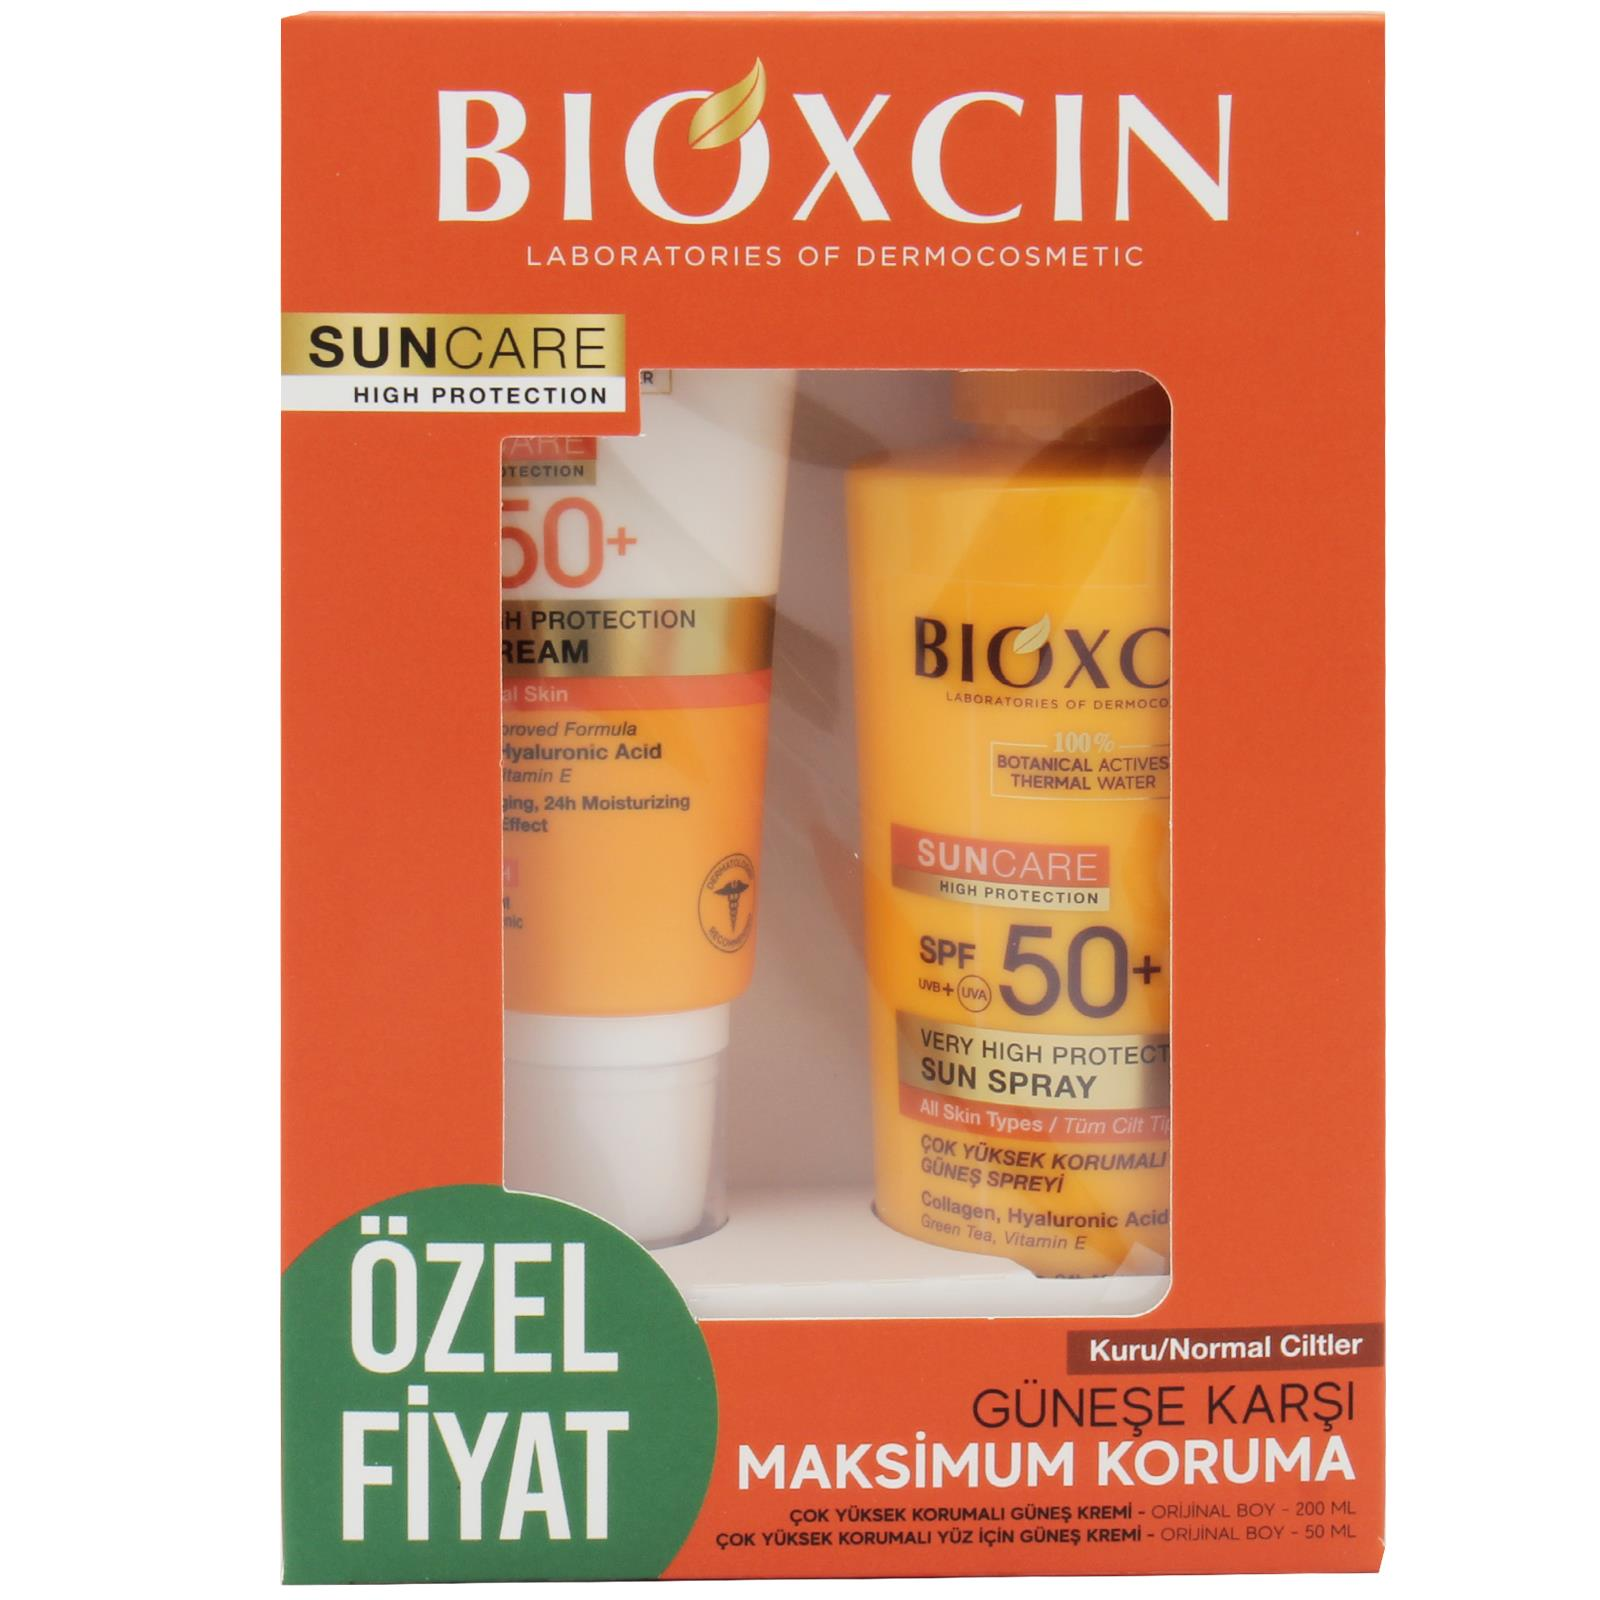 Bioxcin Spf 50+ Kuru/Normal Ciltler İçin Güneş Kremi 50 ml + Tüm Ciltler İçin Güneş Spreyi 200 ml Set